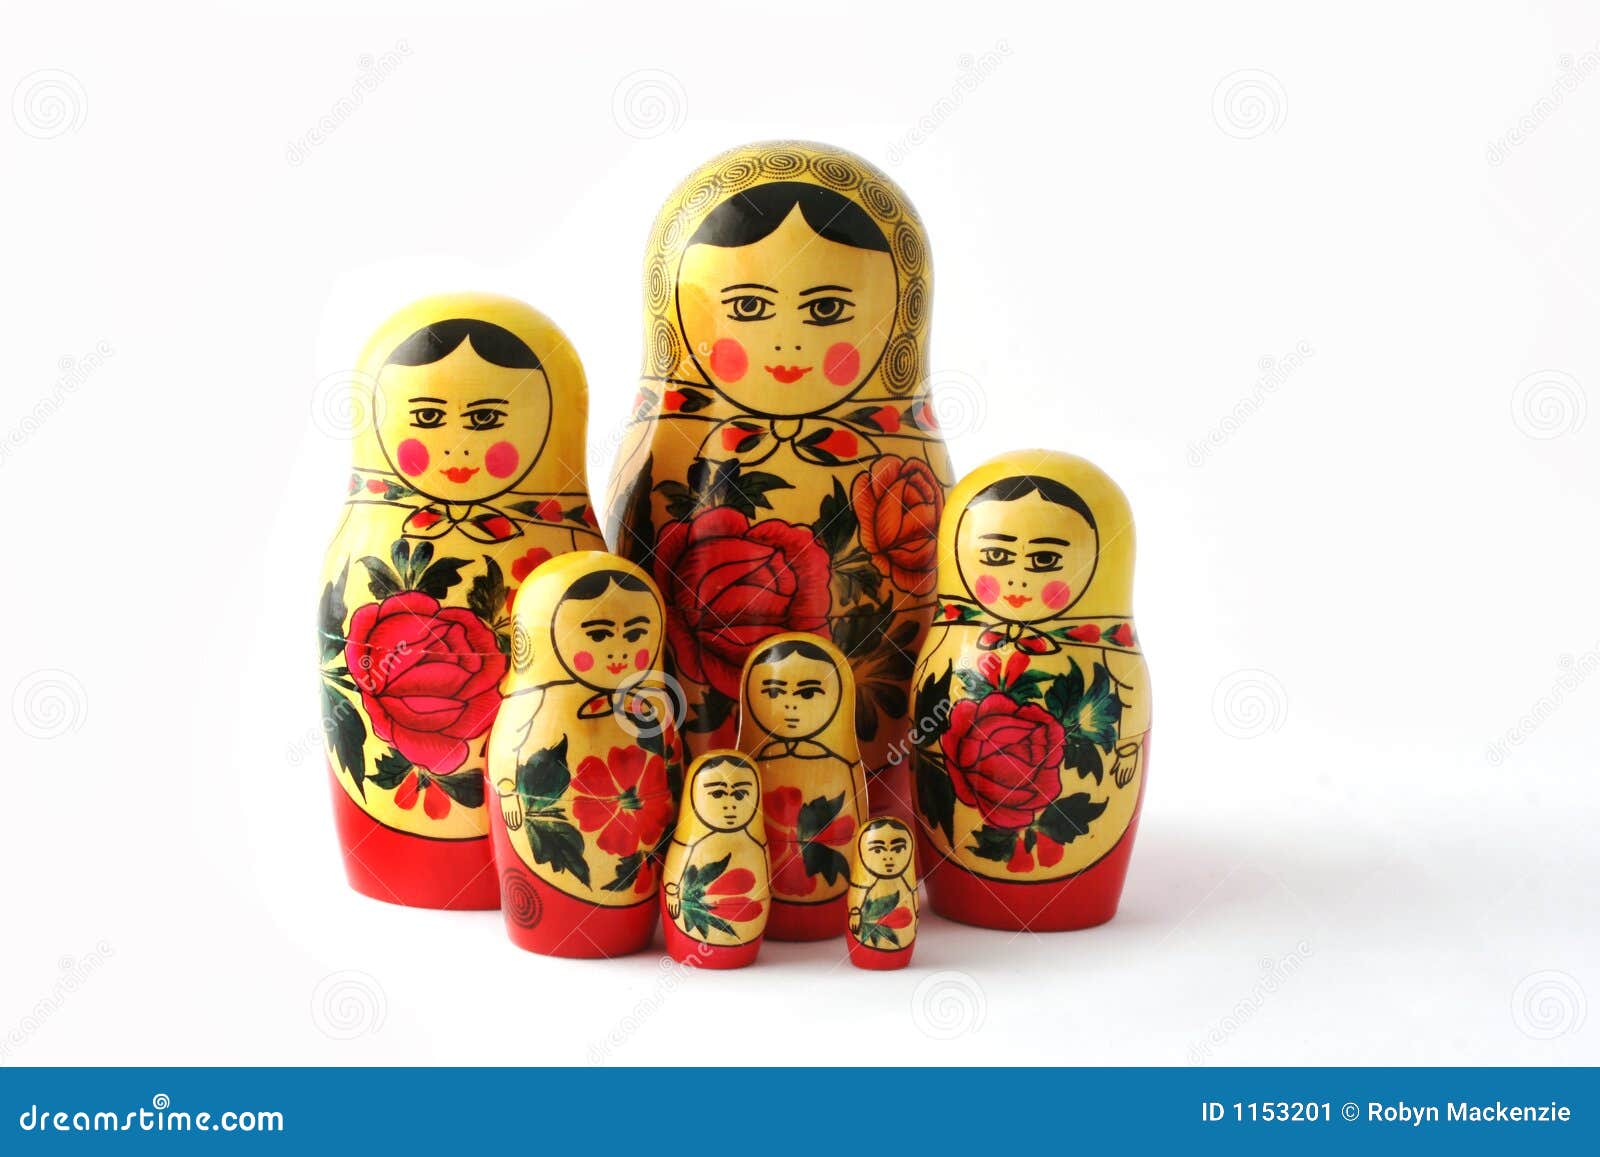 babushka nesting dolls